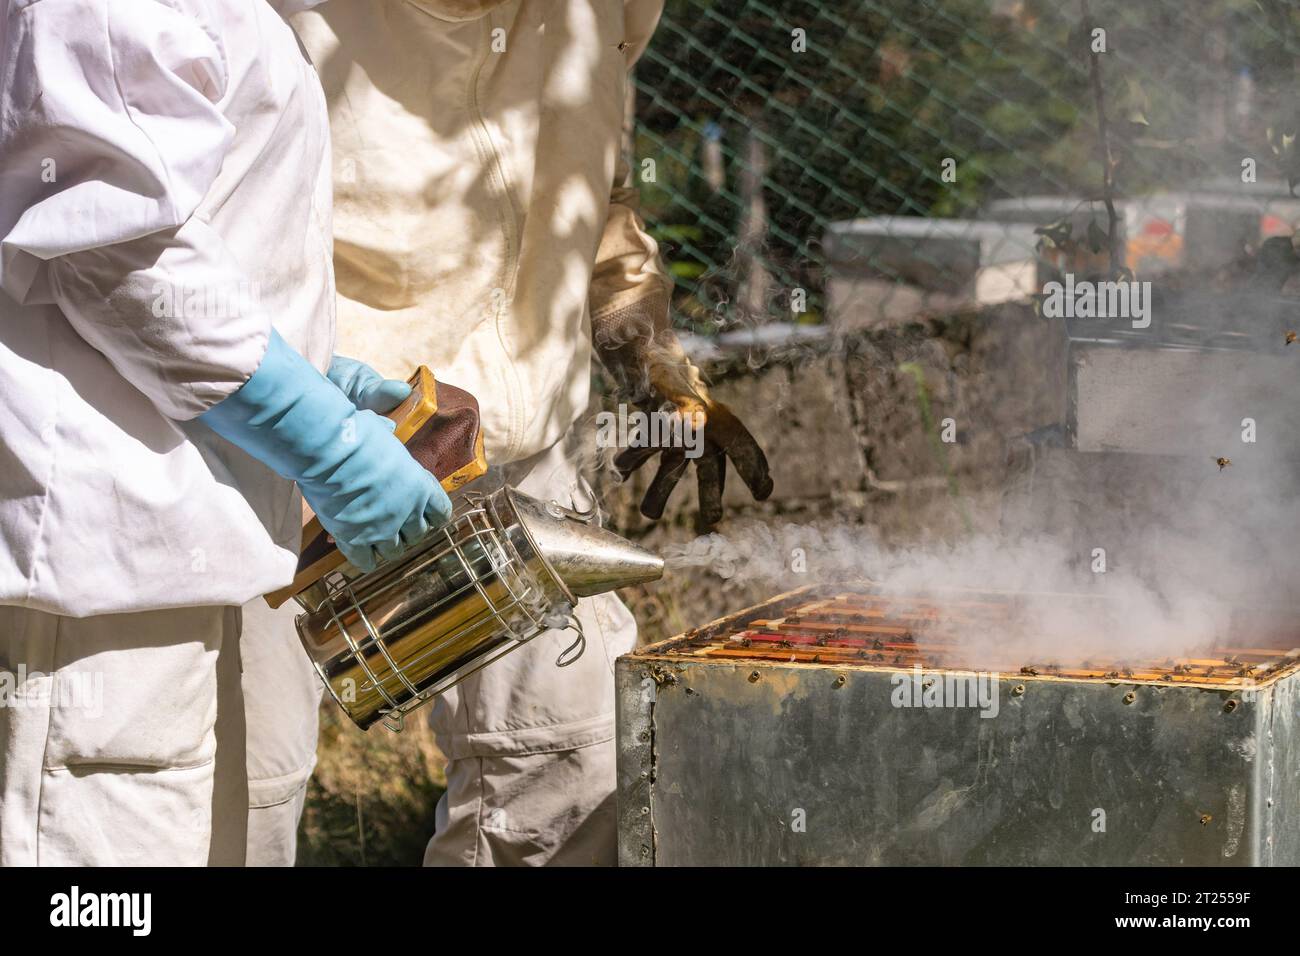 Un apiculteur souffle de la fumée dans une ruche avant qu'un autre apiculteur n'extrait les nids d'abeilles Banque D'Images